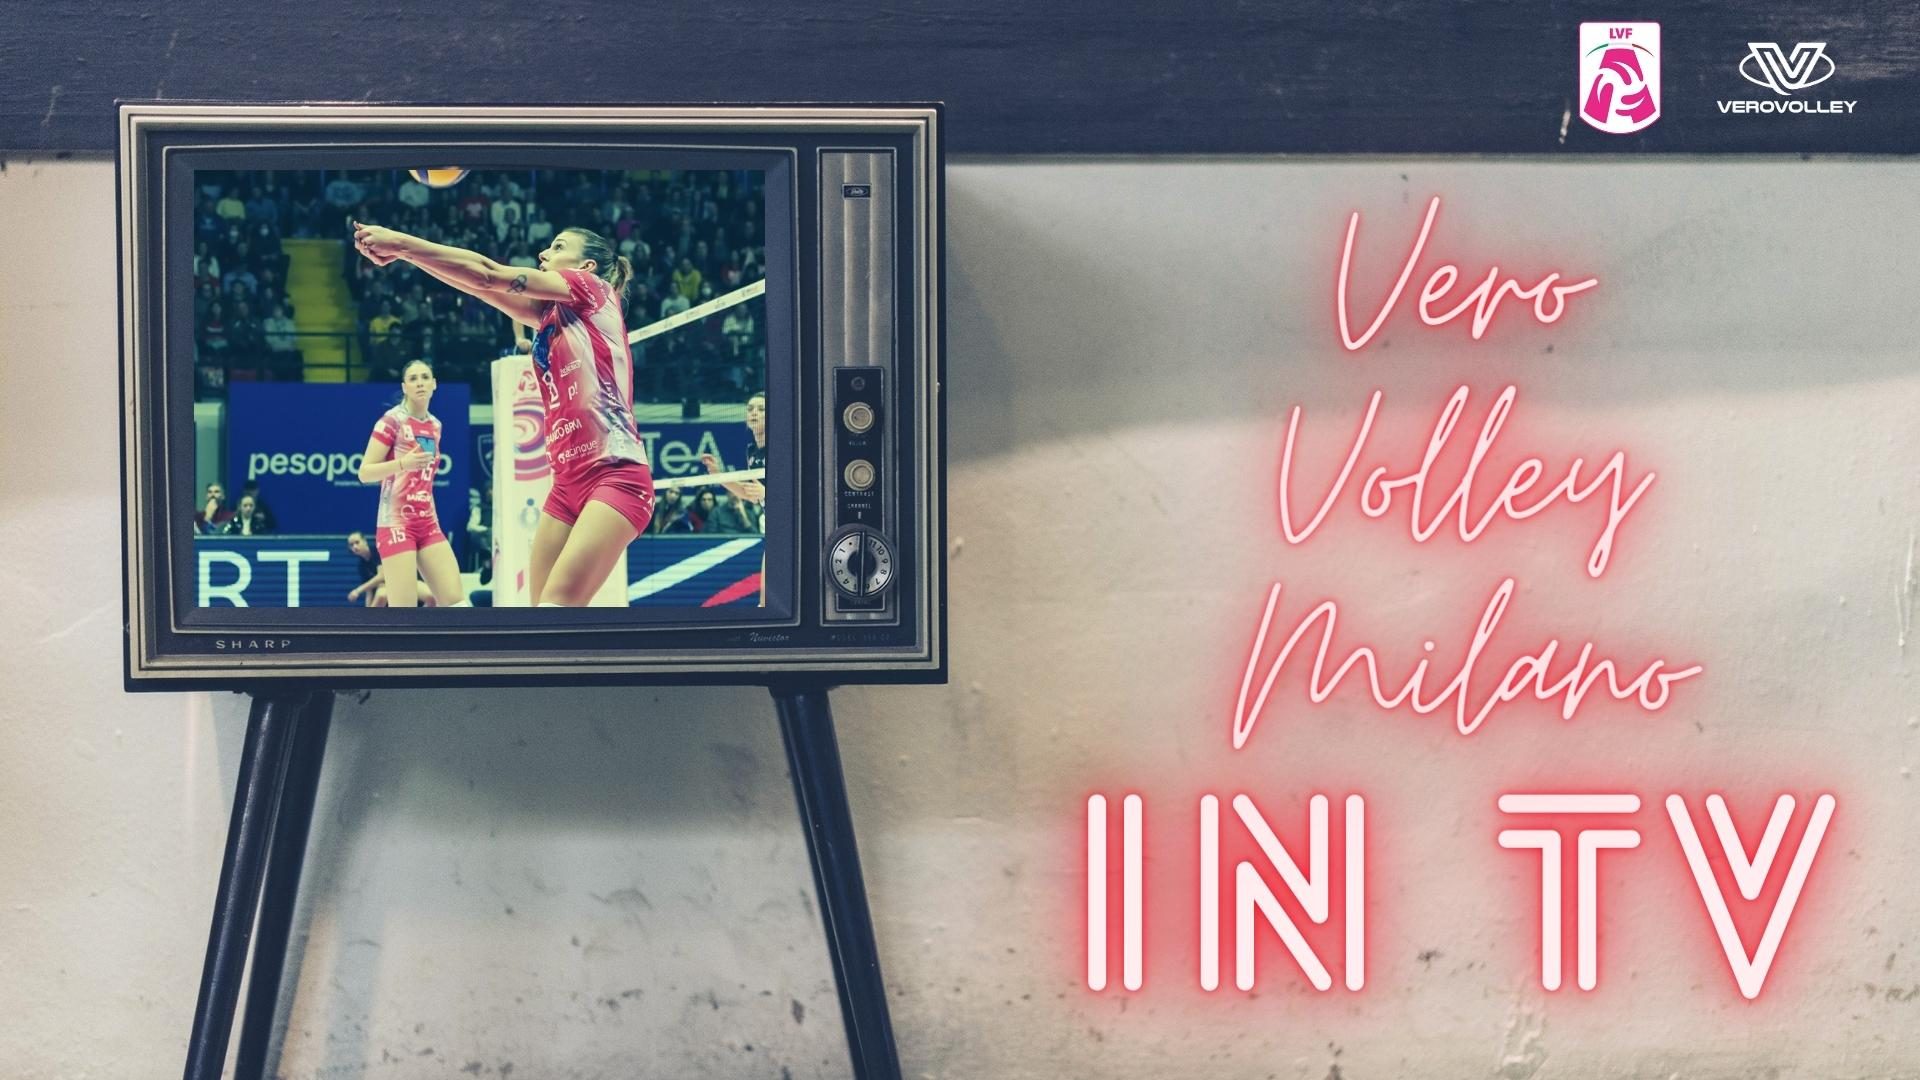 Vero Volley Milano in tv